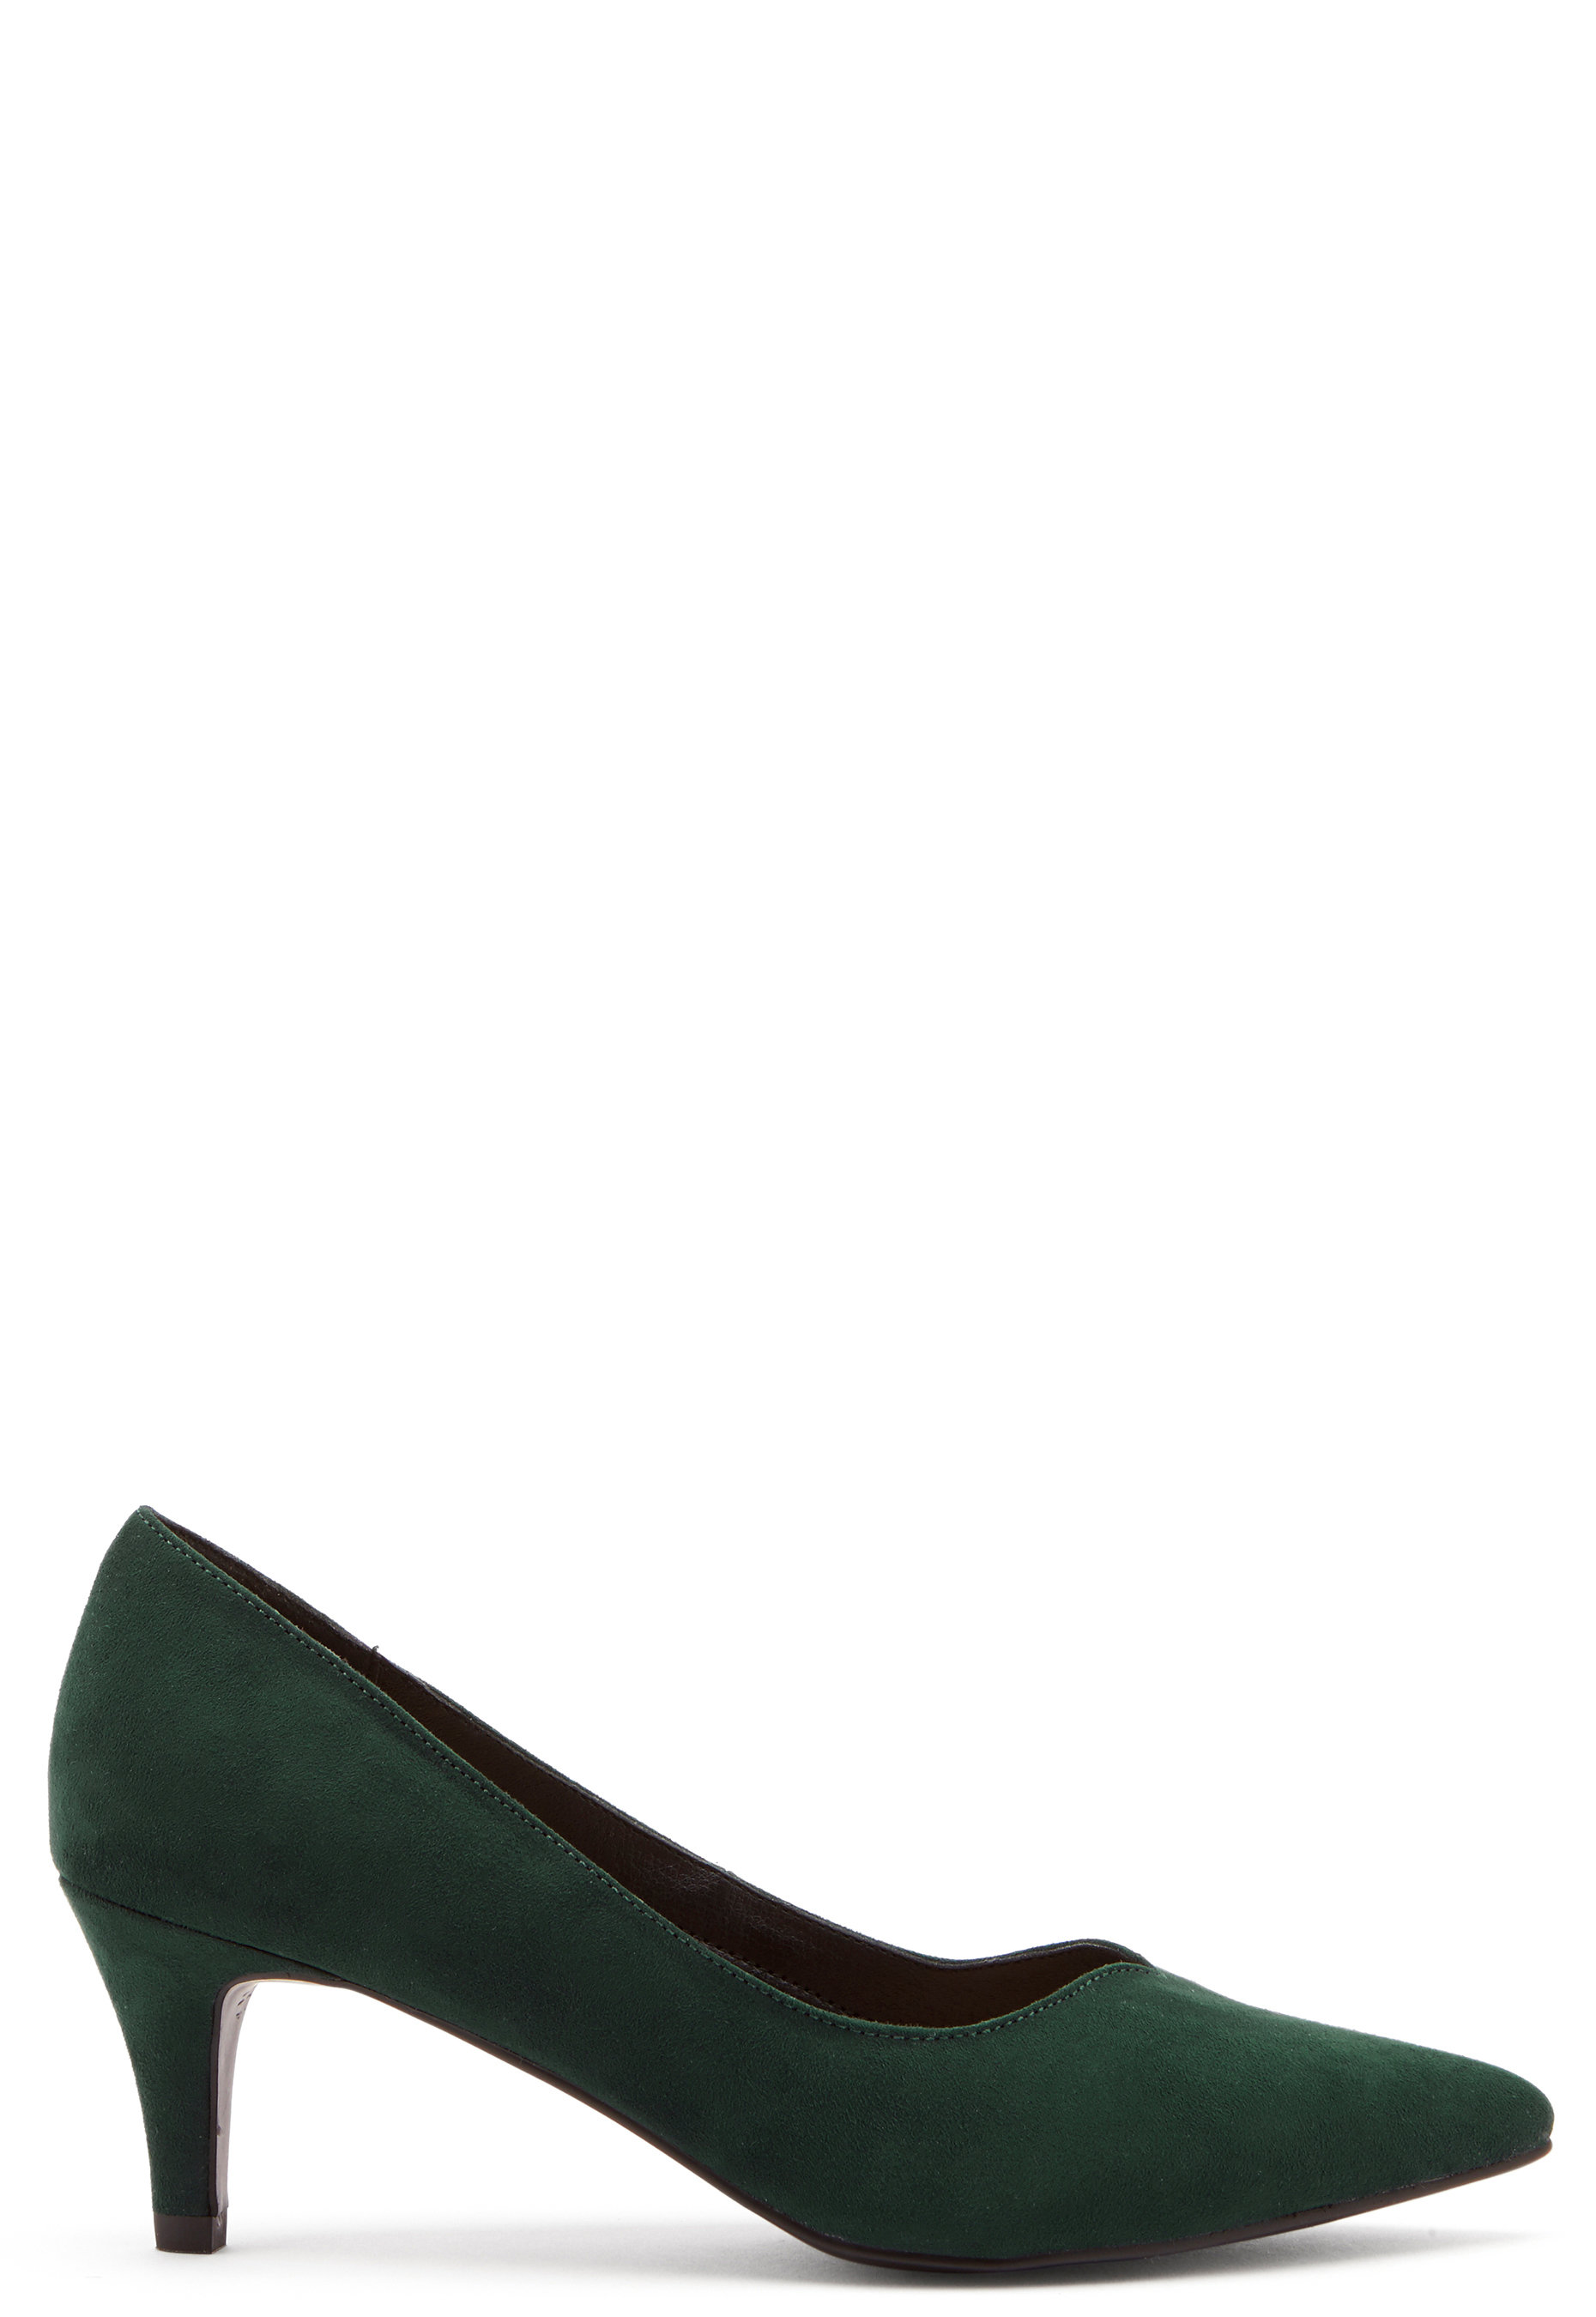 dark green court shoes